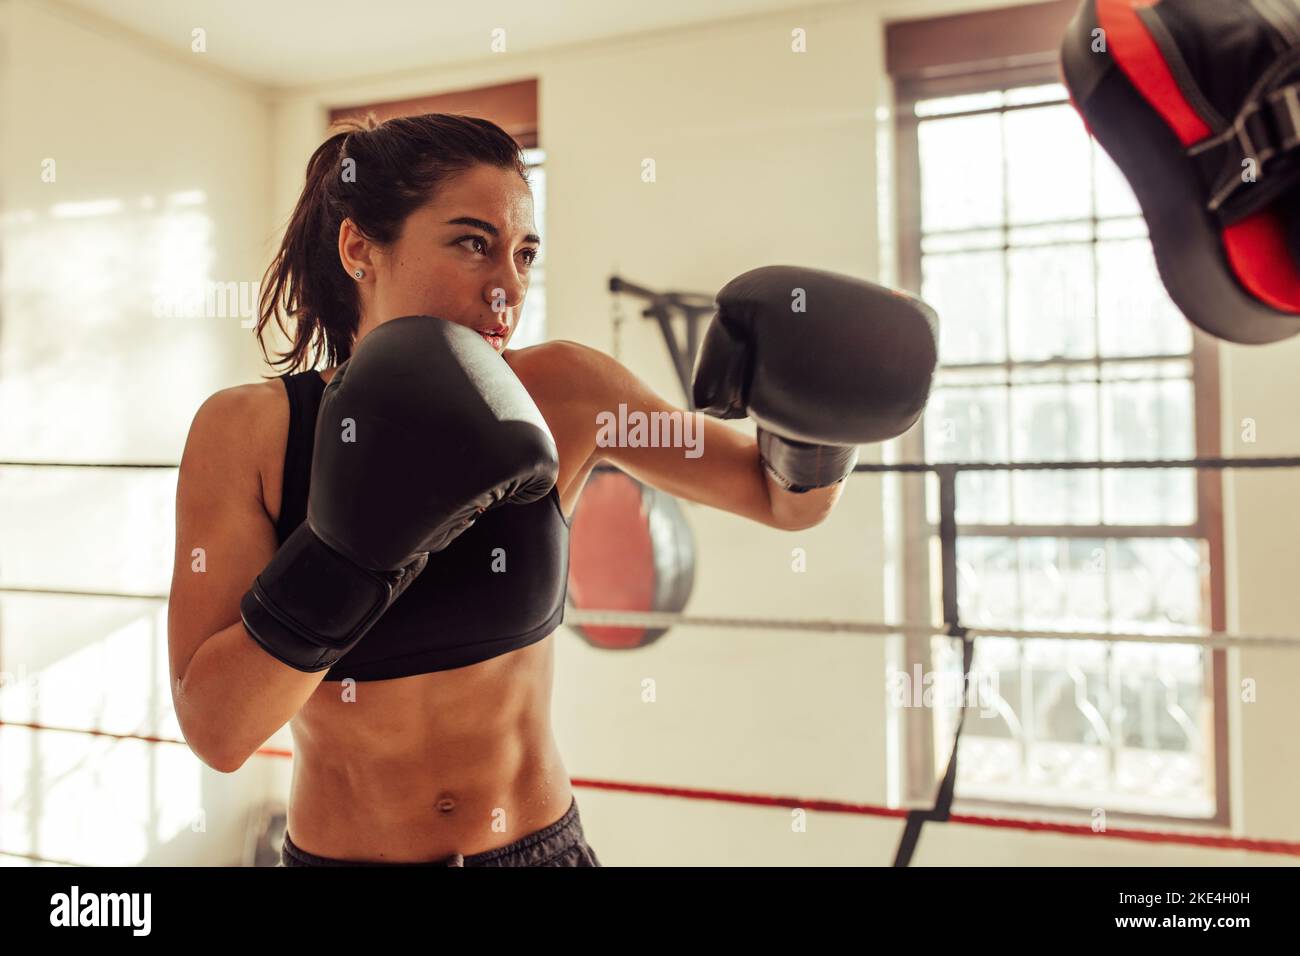 Boxerin stanzt Fokuspolster, während sie in einem Boxring steht. Sportliche junge Frau, die ein Boxtraining in einem Fitnessstudio absolviert. Stockfoto